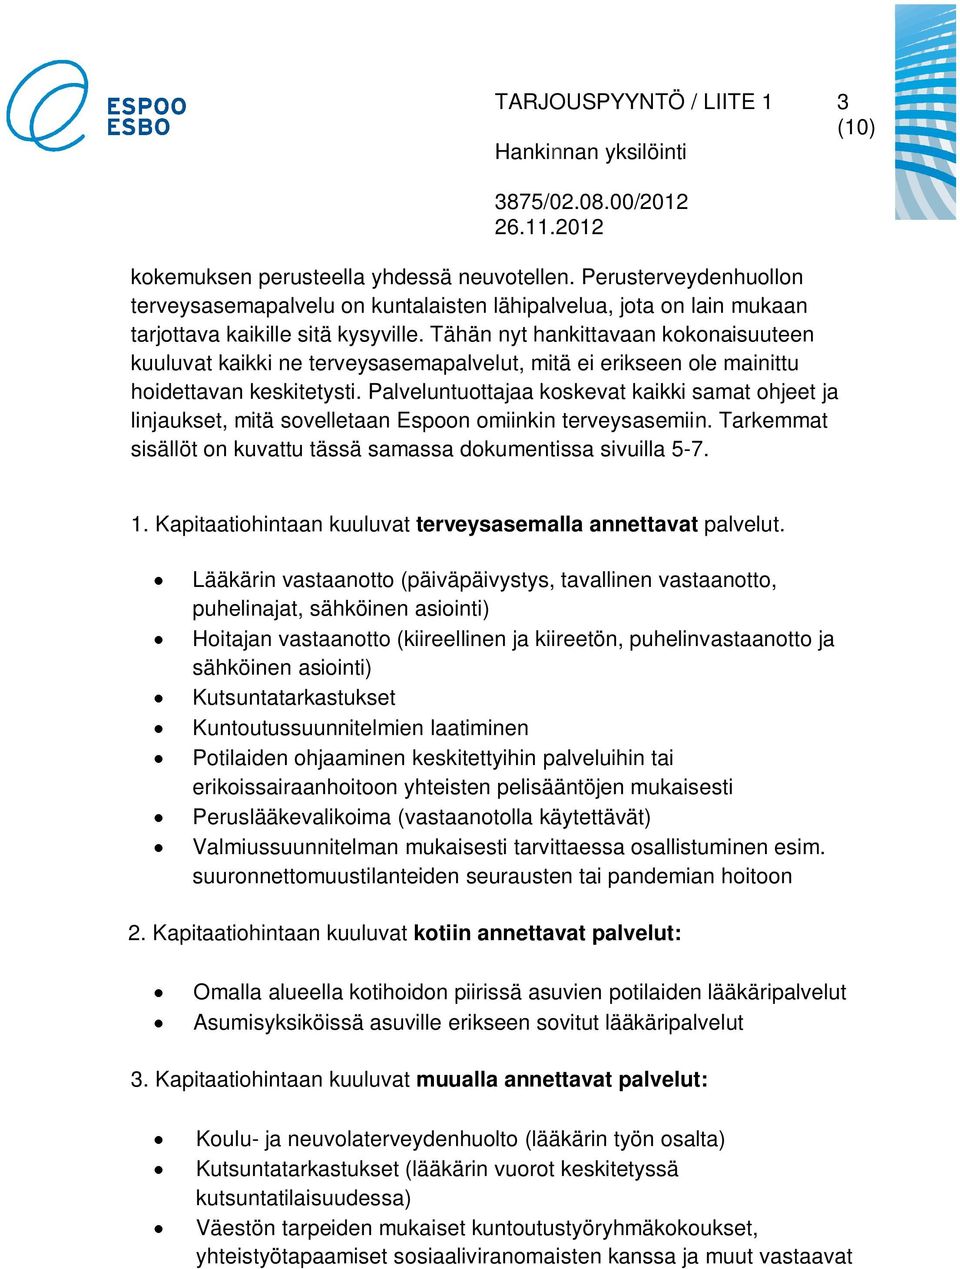 Palveluntuottajaa koskevat kaikki samat ohjeet ja linjaukset, mitä sovelletaan Espoon omiinkin terveysasemiin. Tarkemmat sisällöt on kuvattu tässä samassa dokumentissa sivuilla 5-7. 1.